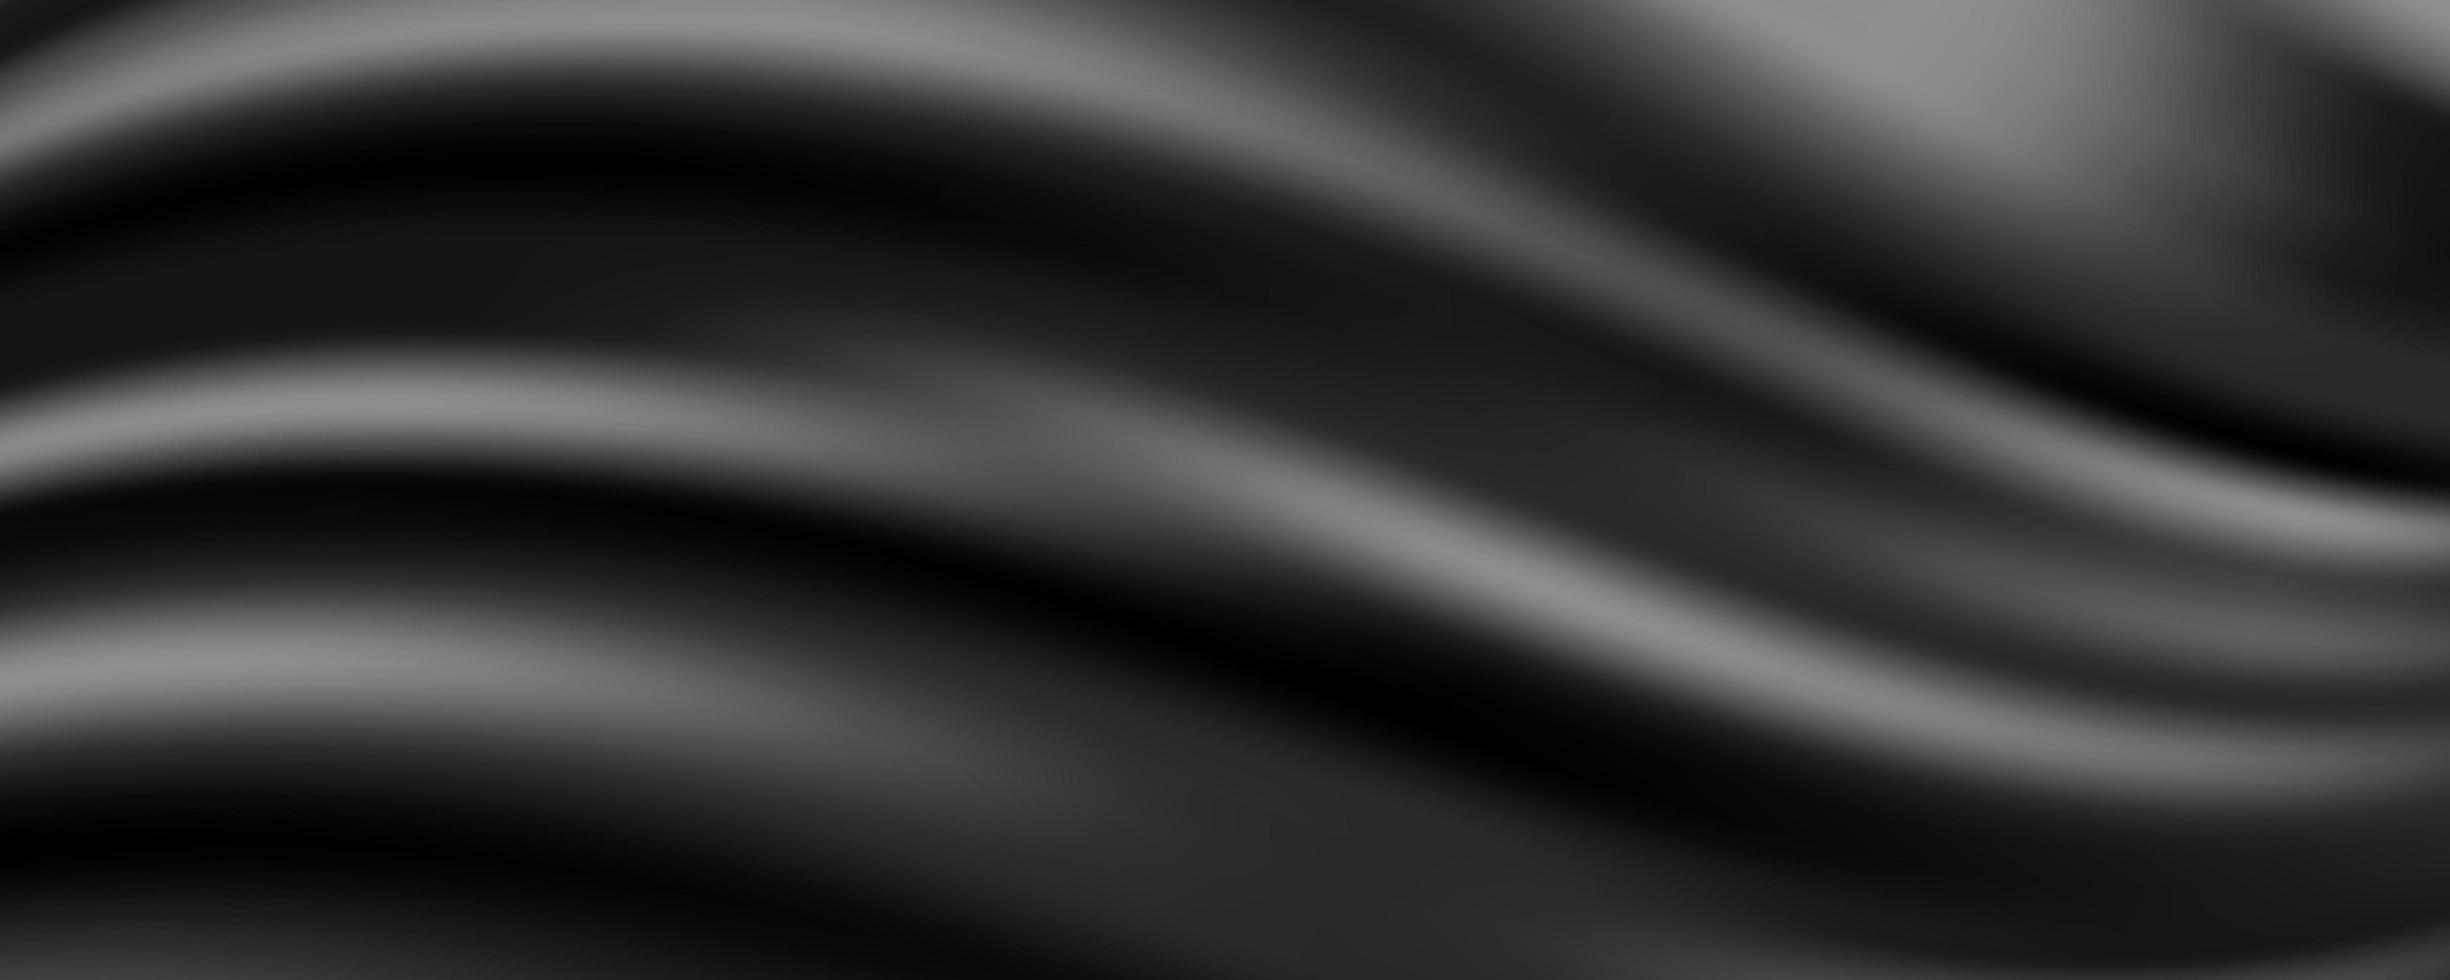 fundo abstrato de tecido de seda preto, ilustração vetorial vetor